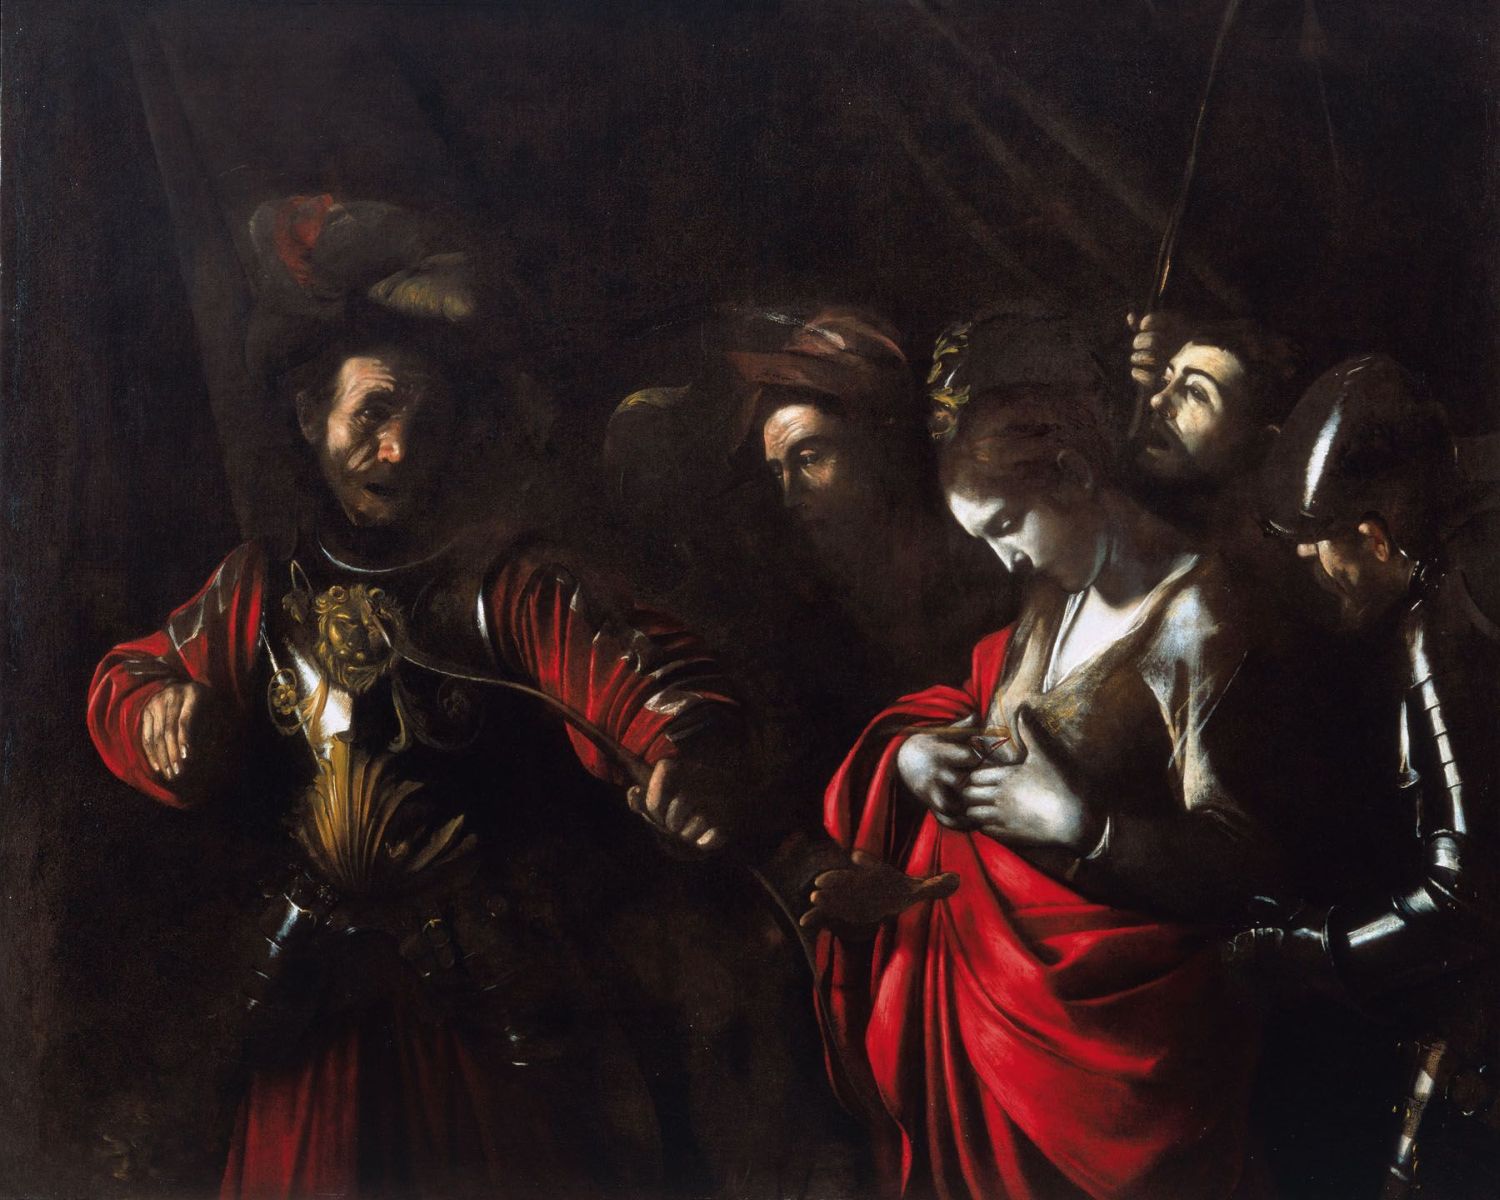 Караваджо. Мученичество святой Урсулы. 1610.